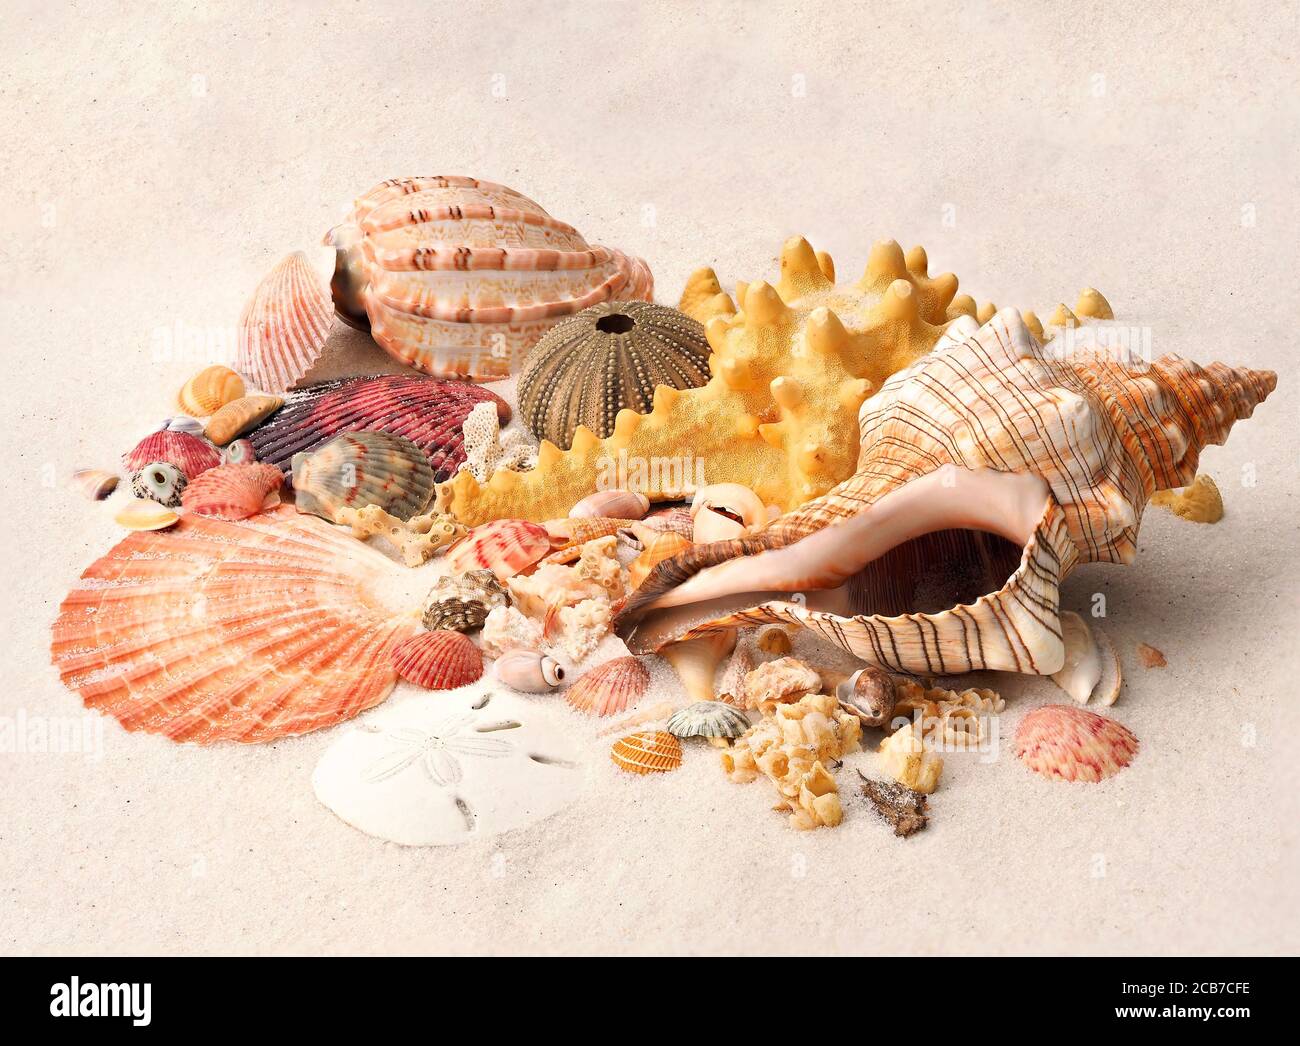 Fokus gestapeltes Bild von tropischen Meeresmuscheln, Sanddollars und Seeigel an einem weißen Sandstrand Stockfoto